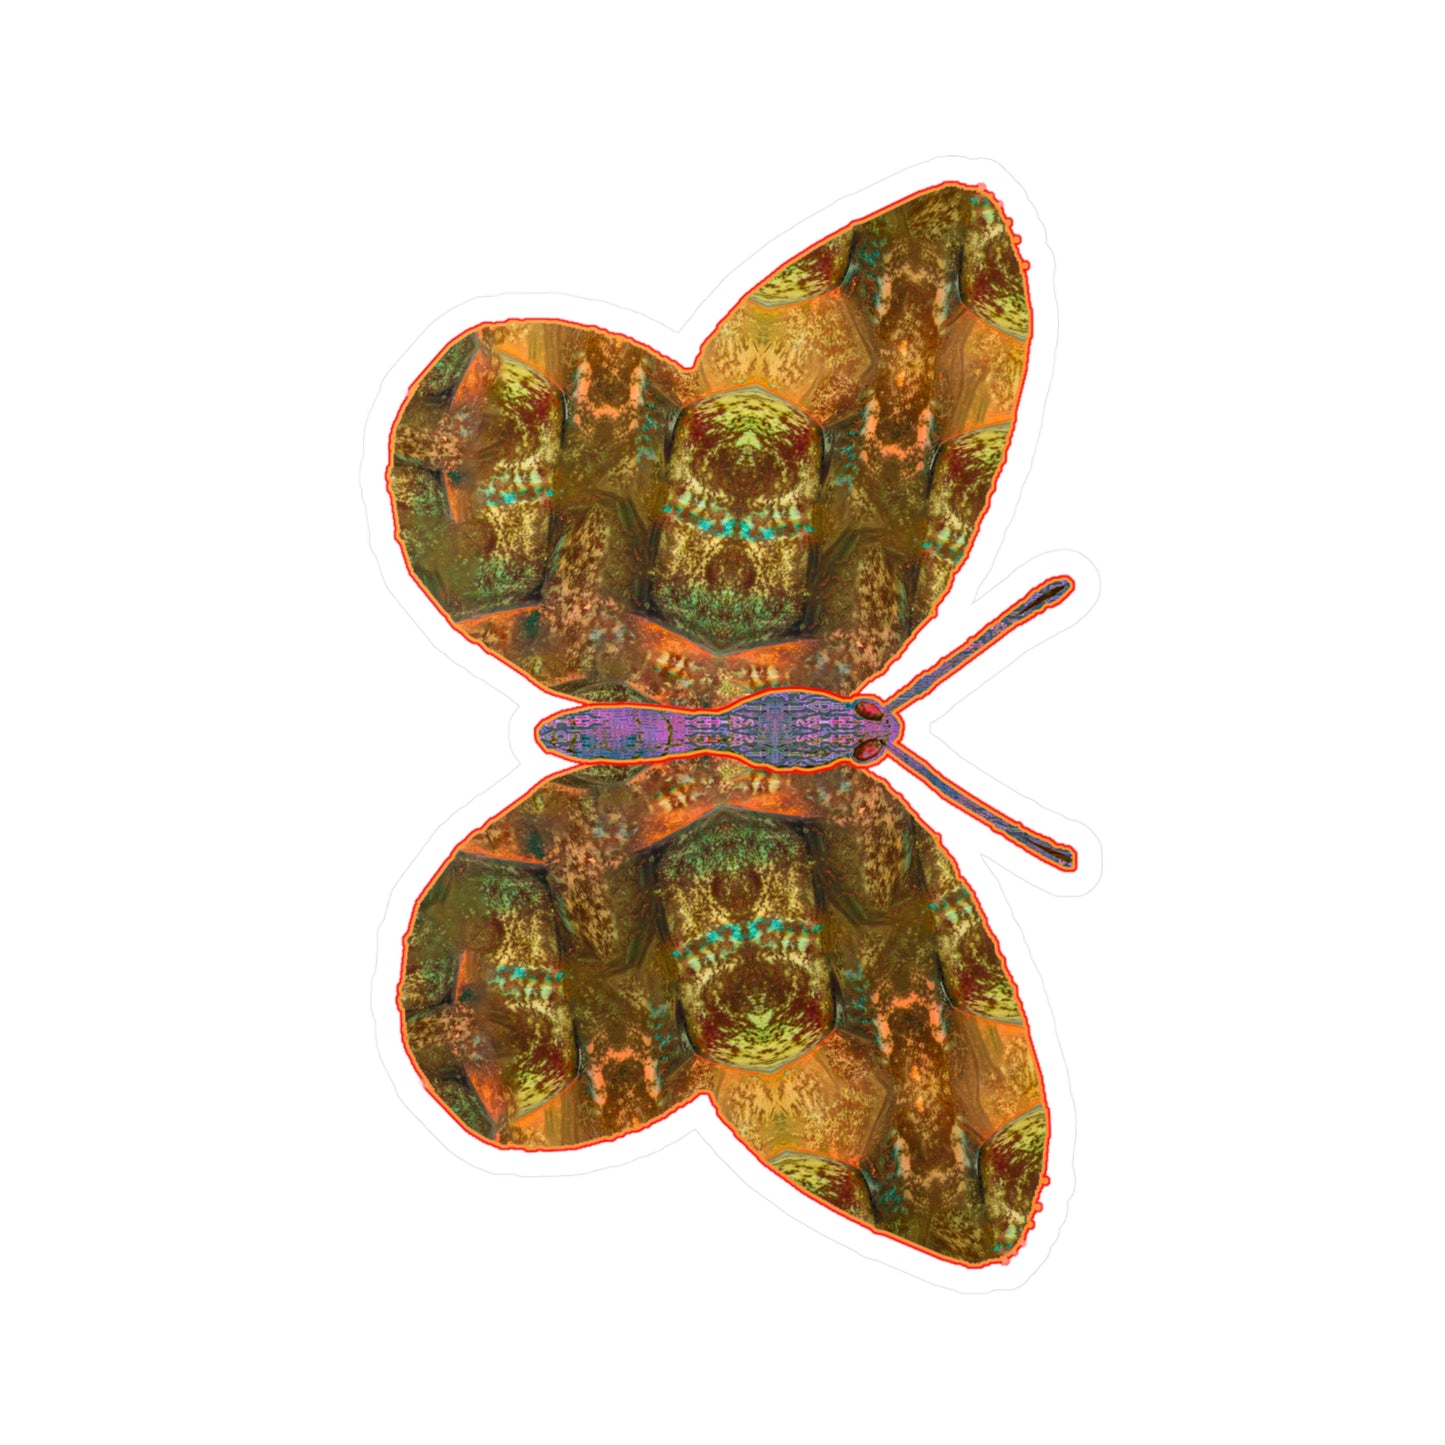 Ante Iridem Margo (Vinyl Decals) (Butterfly Glade Denizen) RJSTH@Fabric#6_7 of 16 RJSTHw2023 RJS